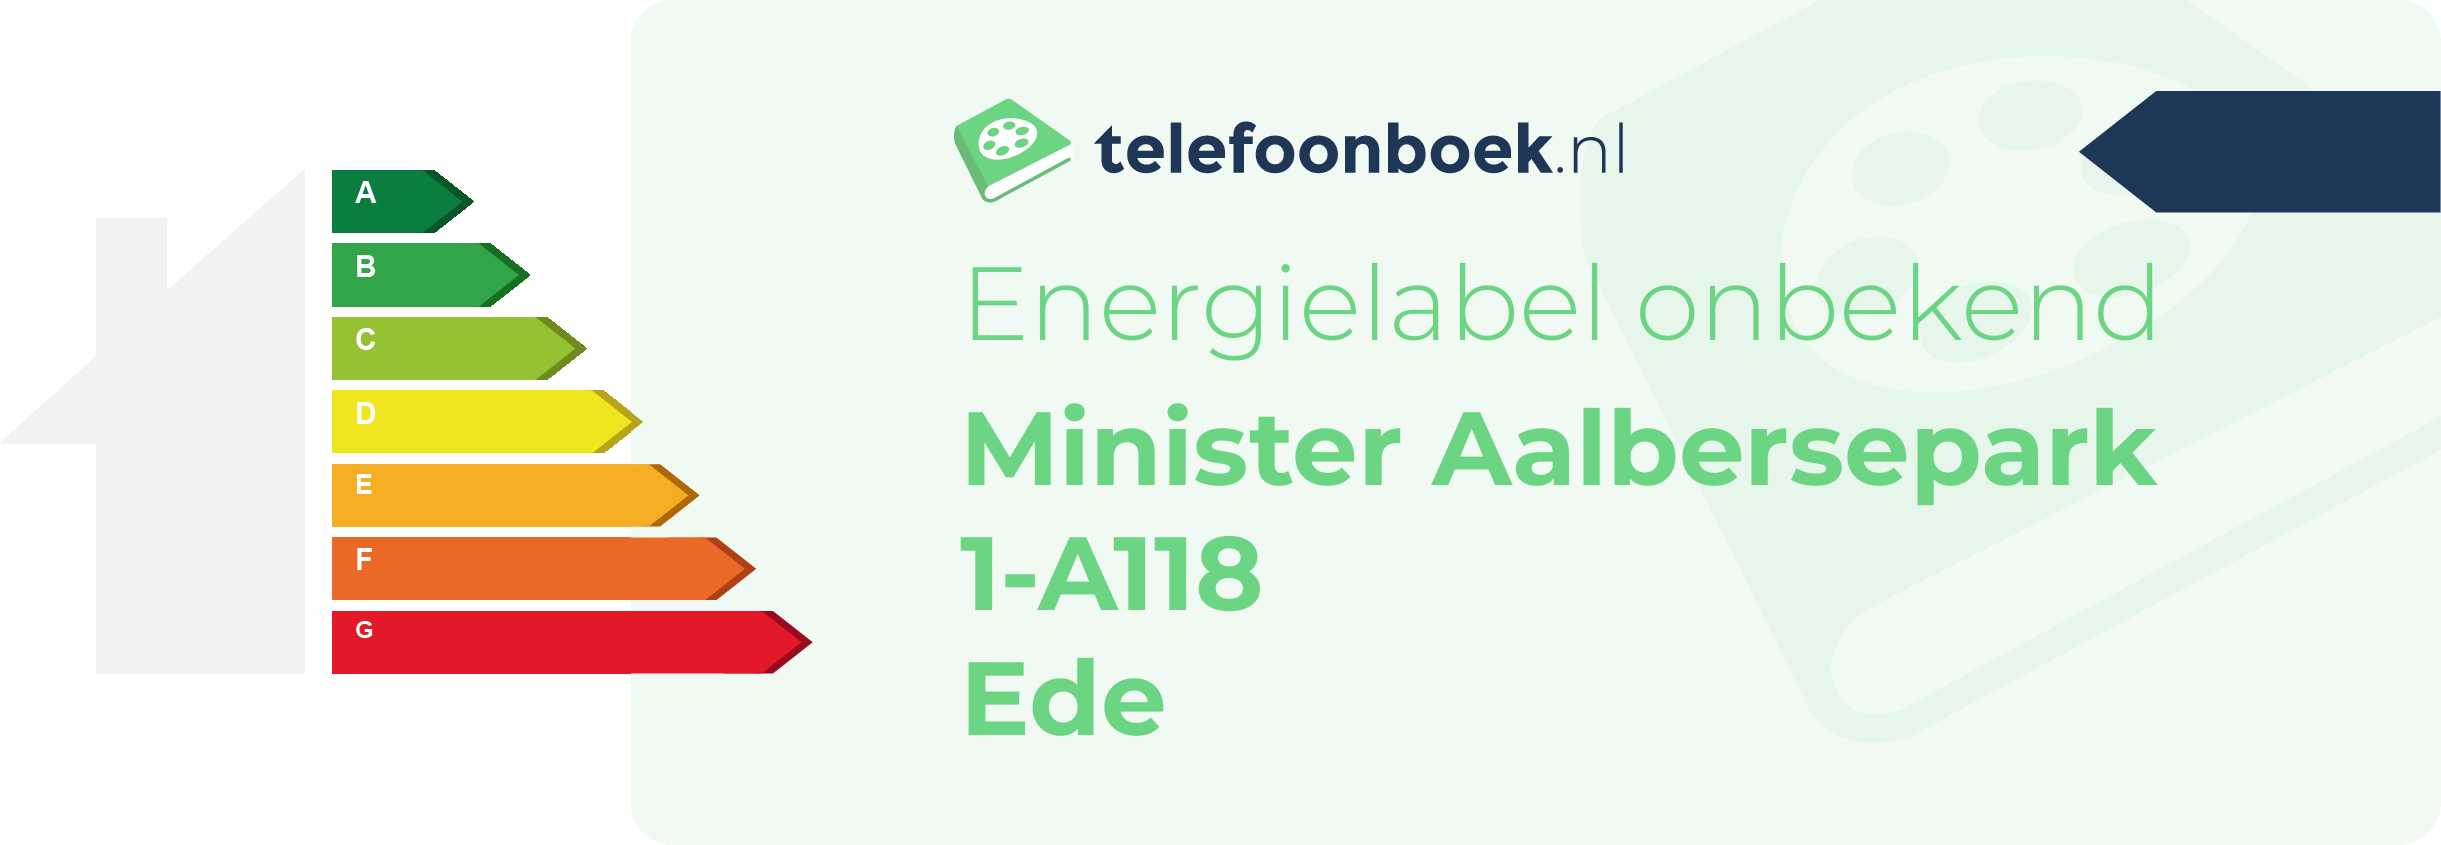 Energielabel Minister Aalbersepark 1-A118 Ede